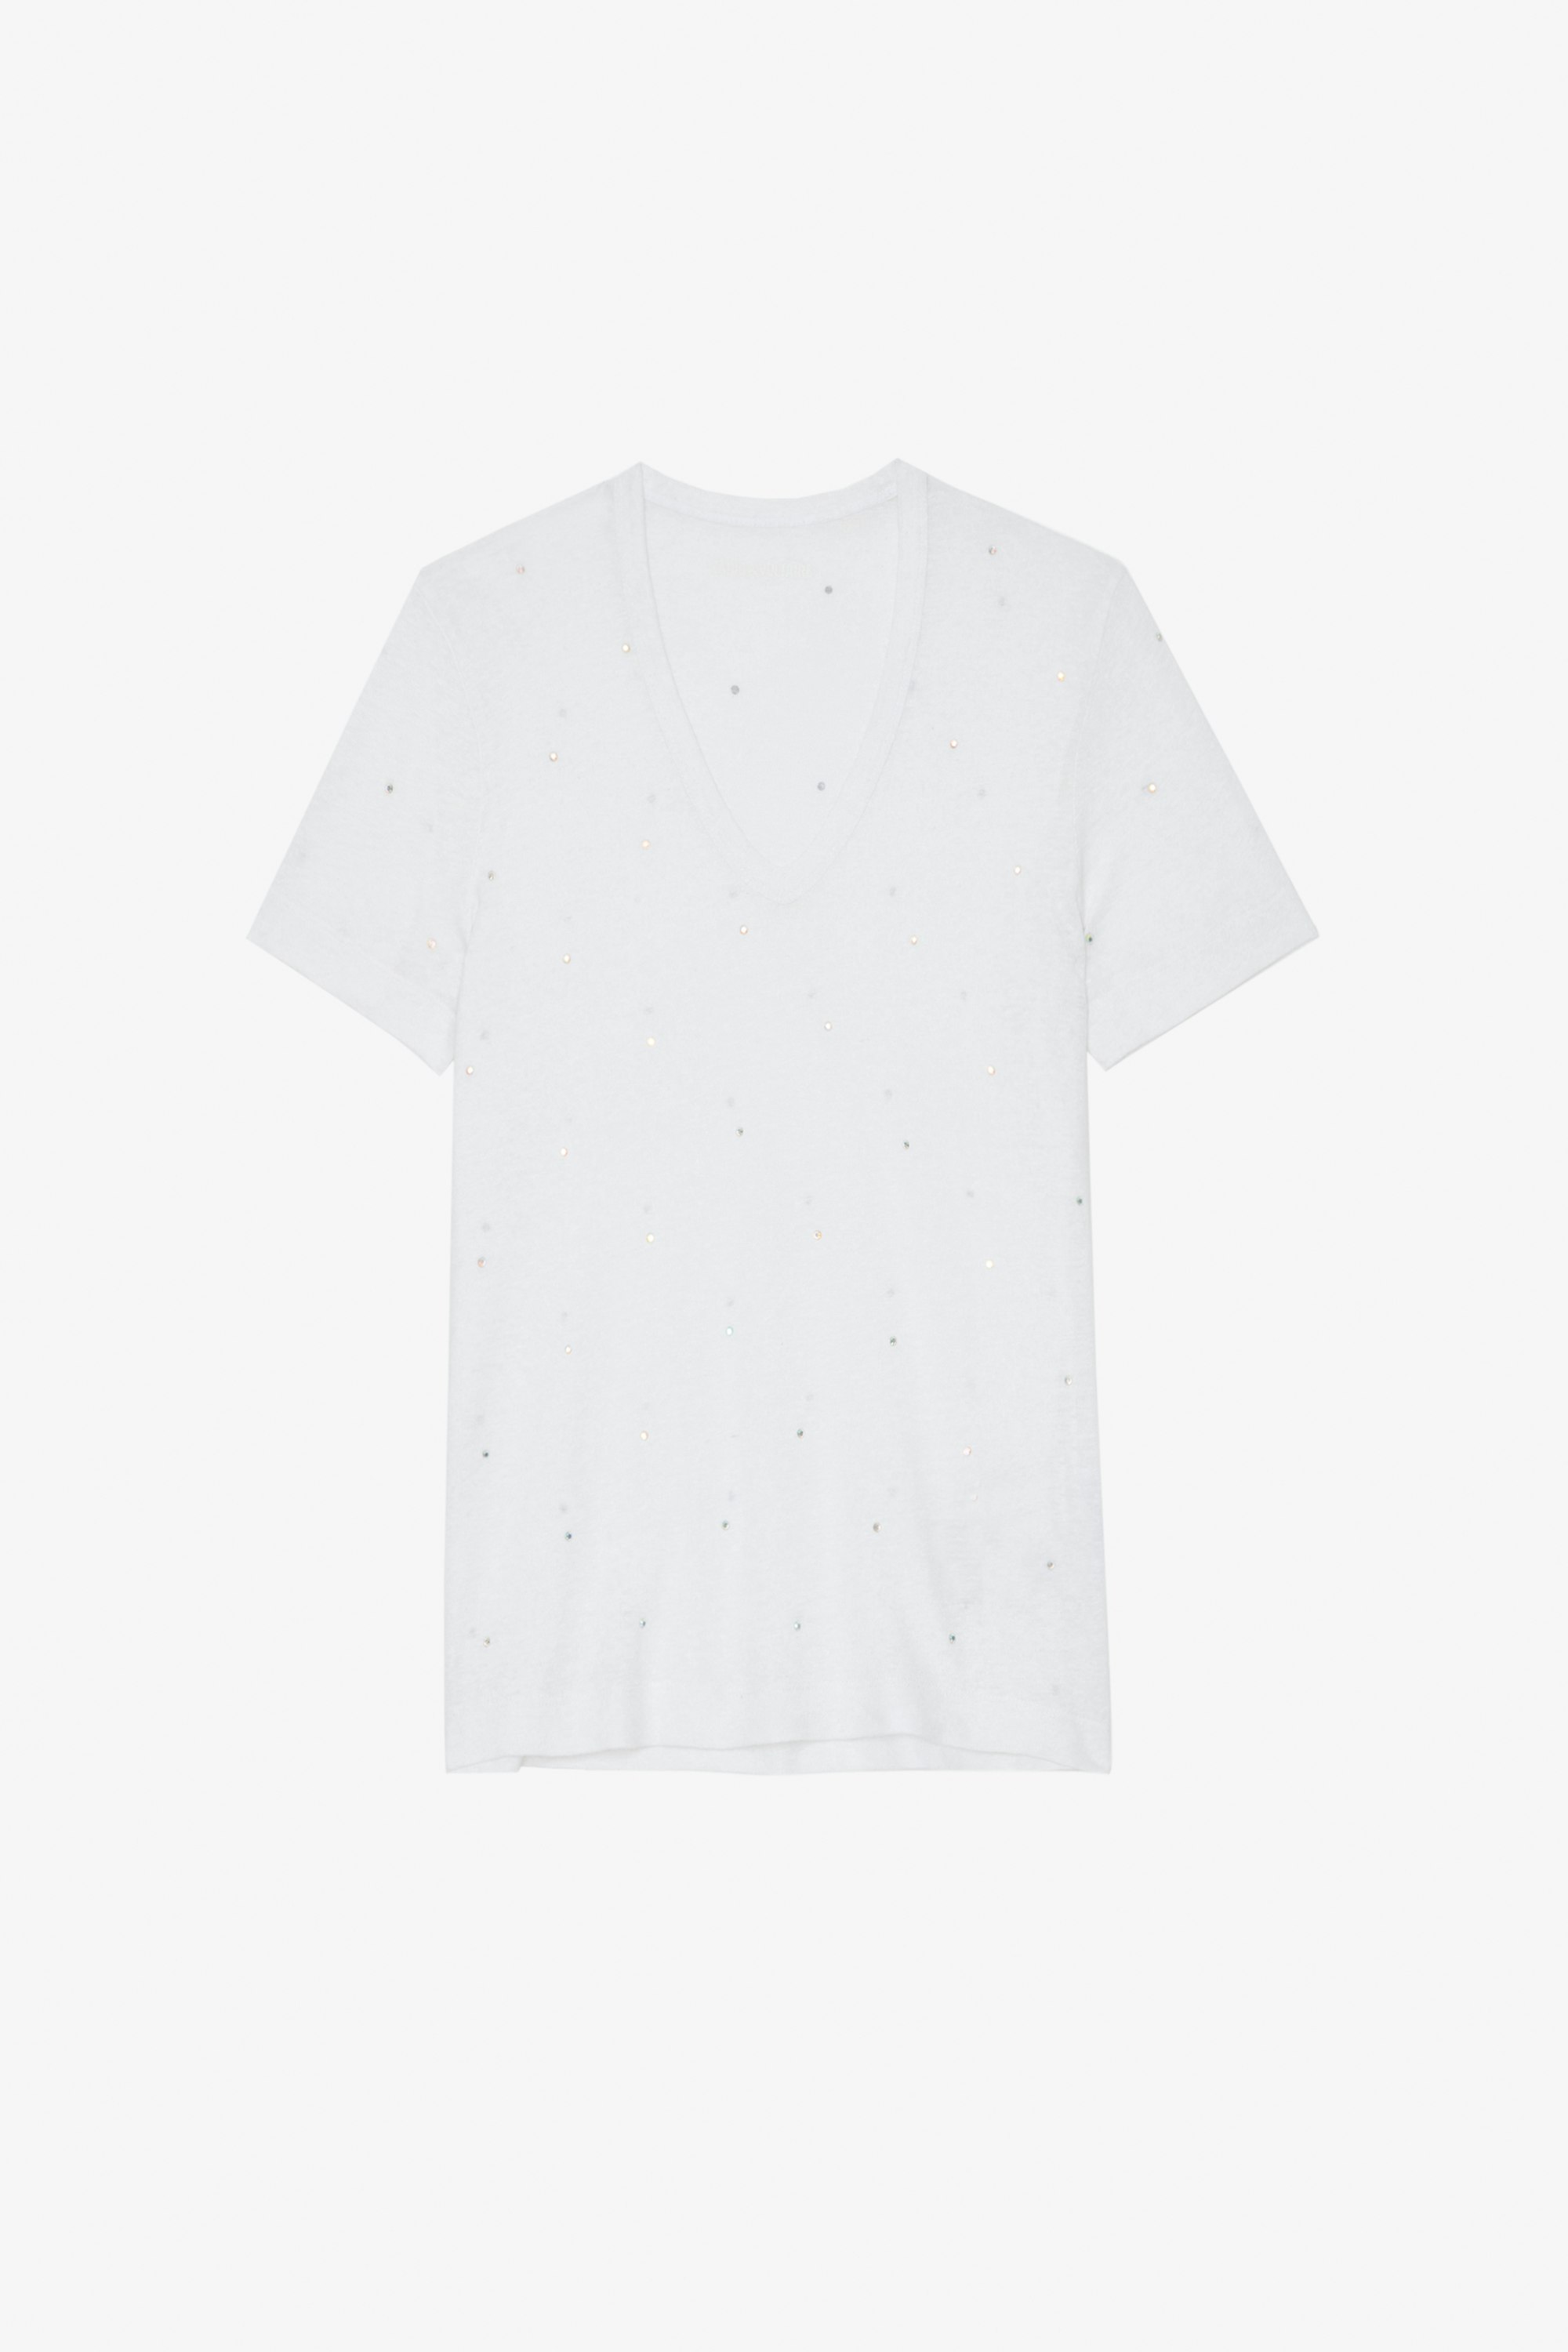 Wassa T-Shirt ホワイト クリスタル Tシャツ レディース